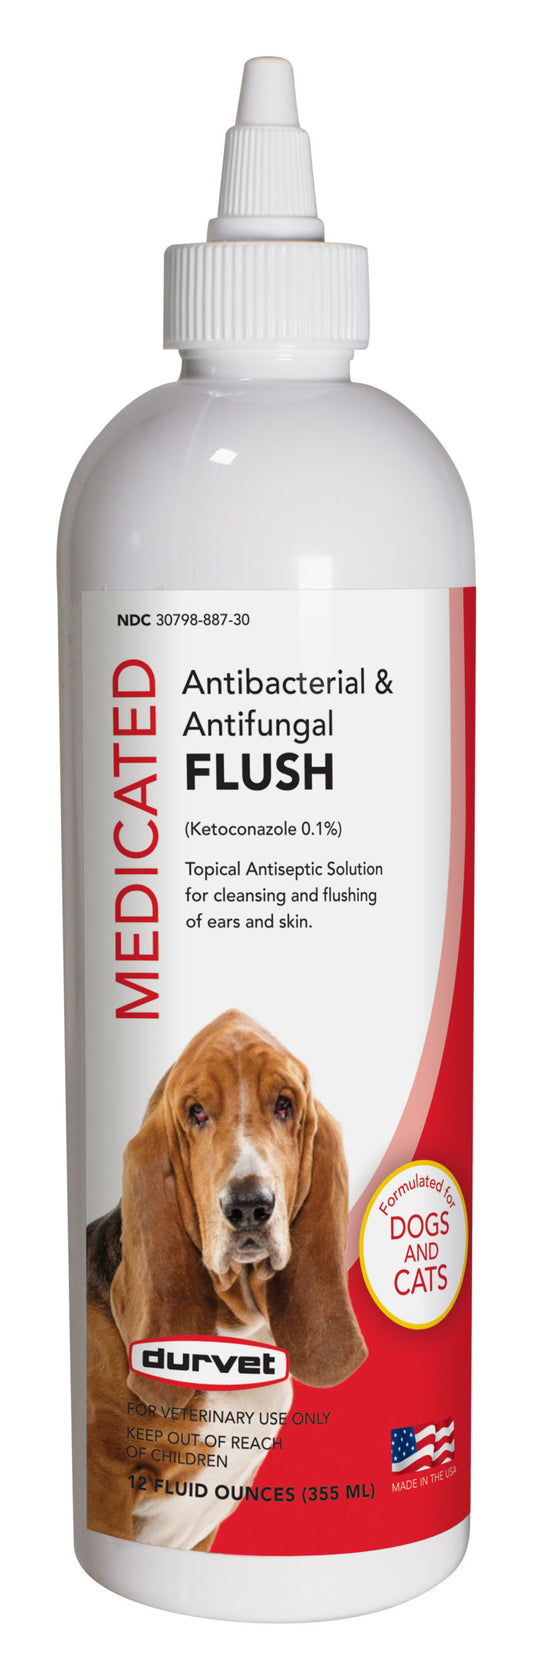 12oz Durvet Antibacterial & Antifungal Flush